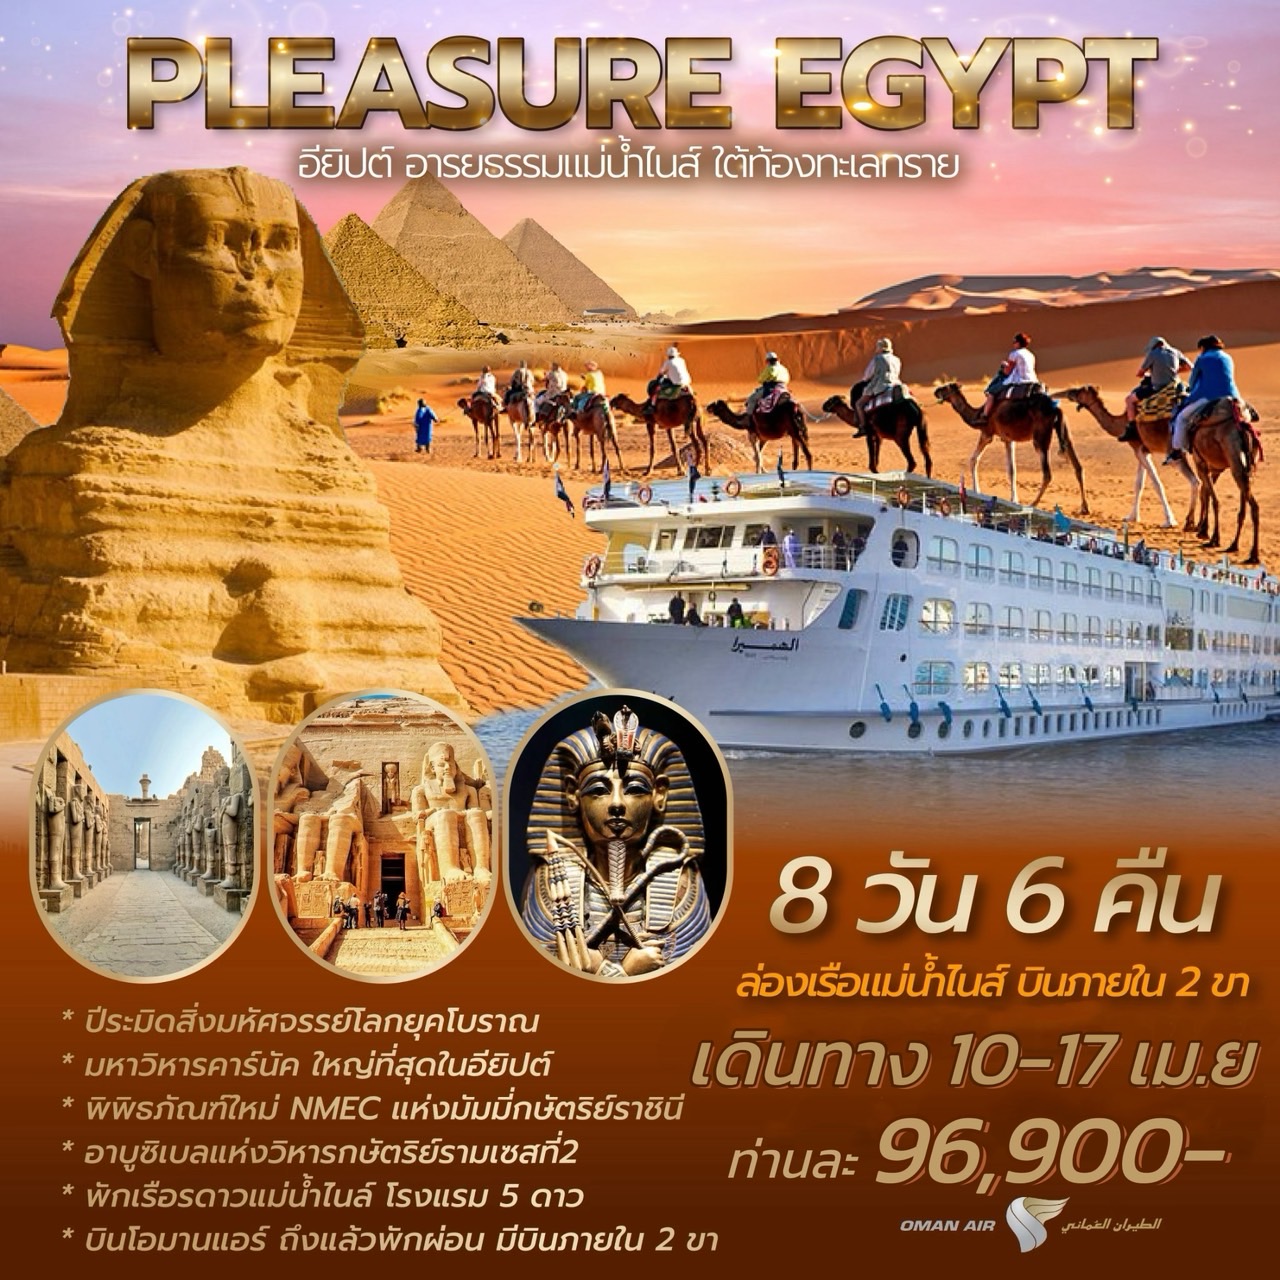 ทัวร์อียิปต์ PLEASURE EGYPT 8วัน 6คืน